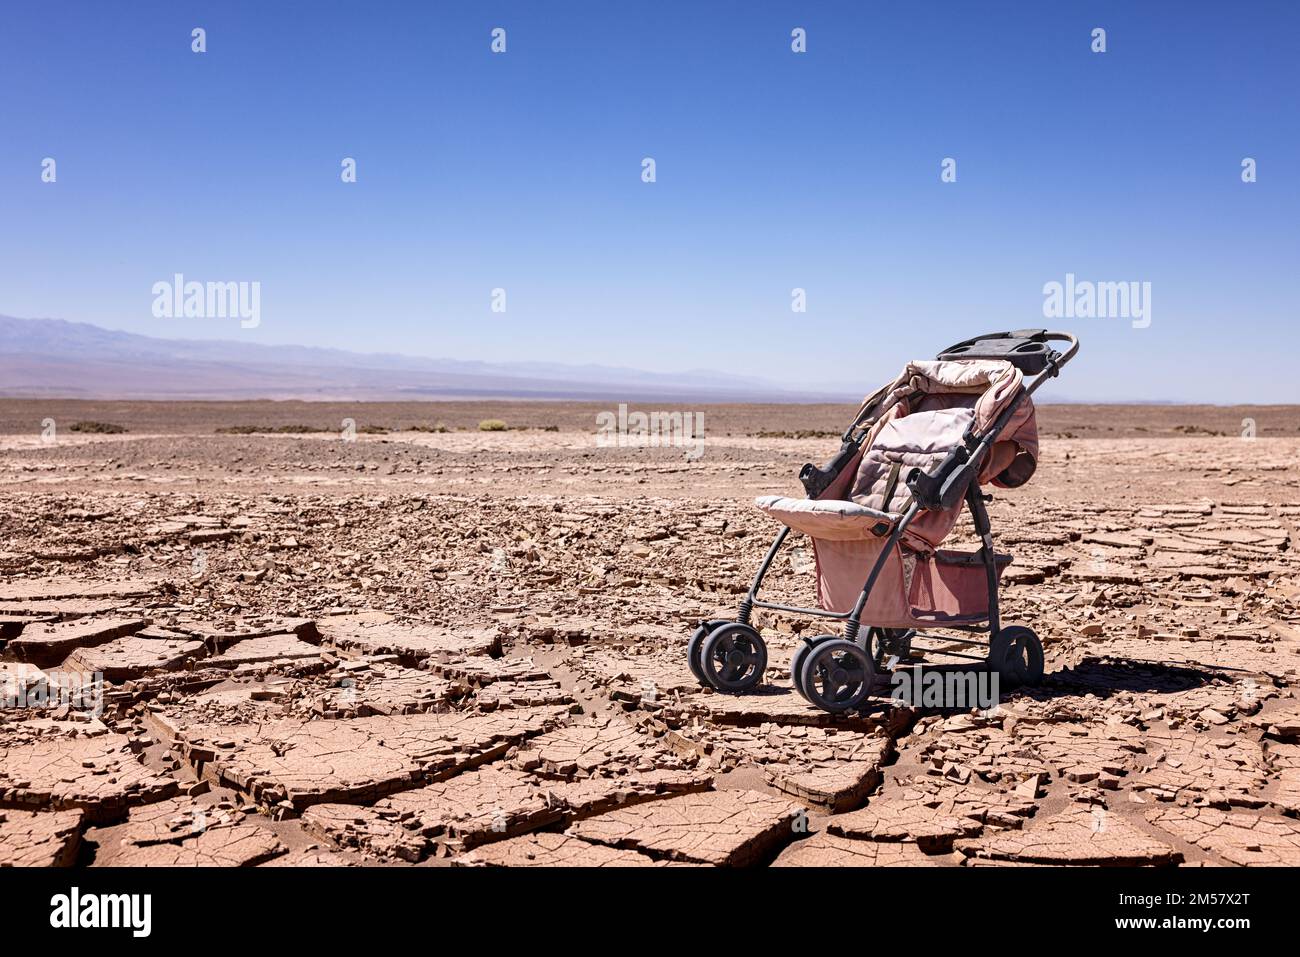 Désertification : image symbolique du changement climatique - poussette abandonnée sur sol sec dans le désert d'Atacama, près de l'oasis de Pica Banque D'Images